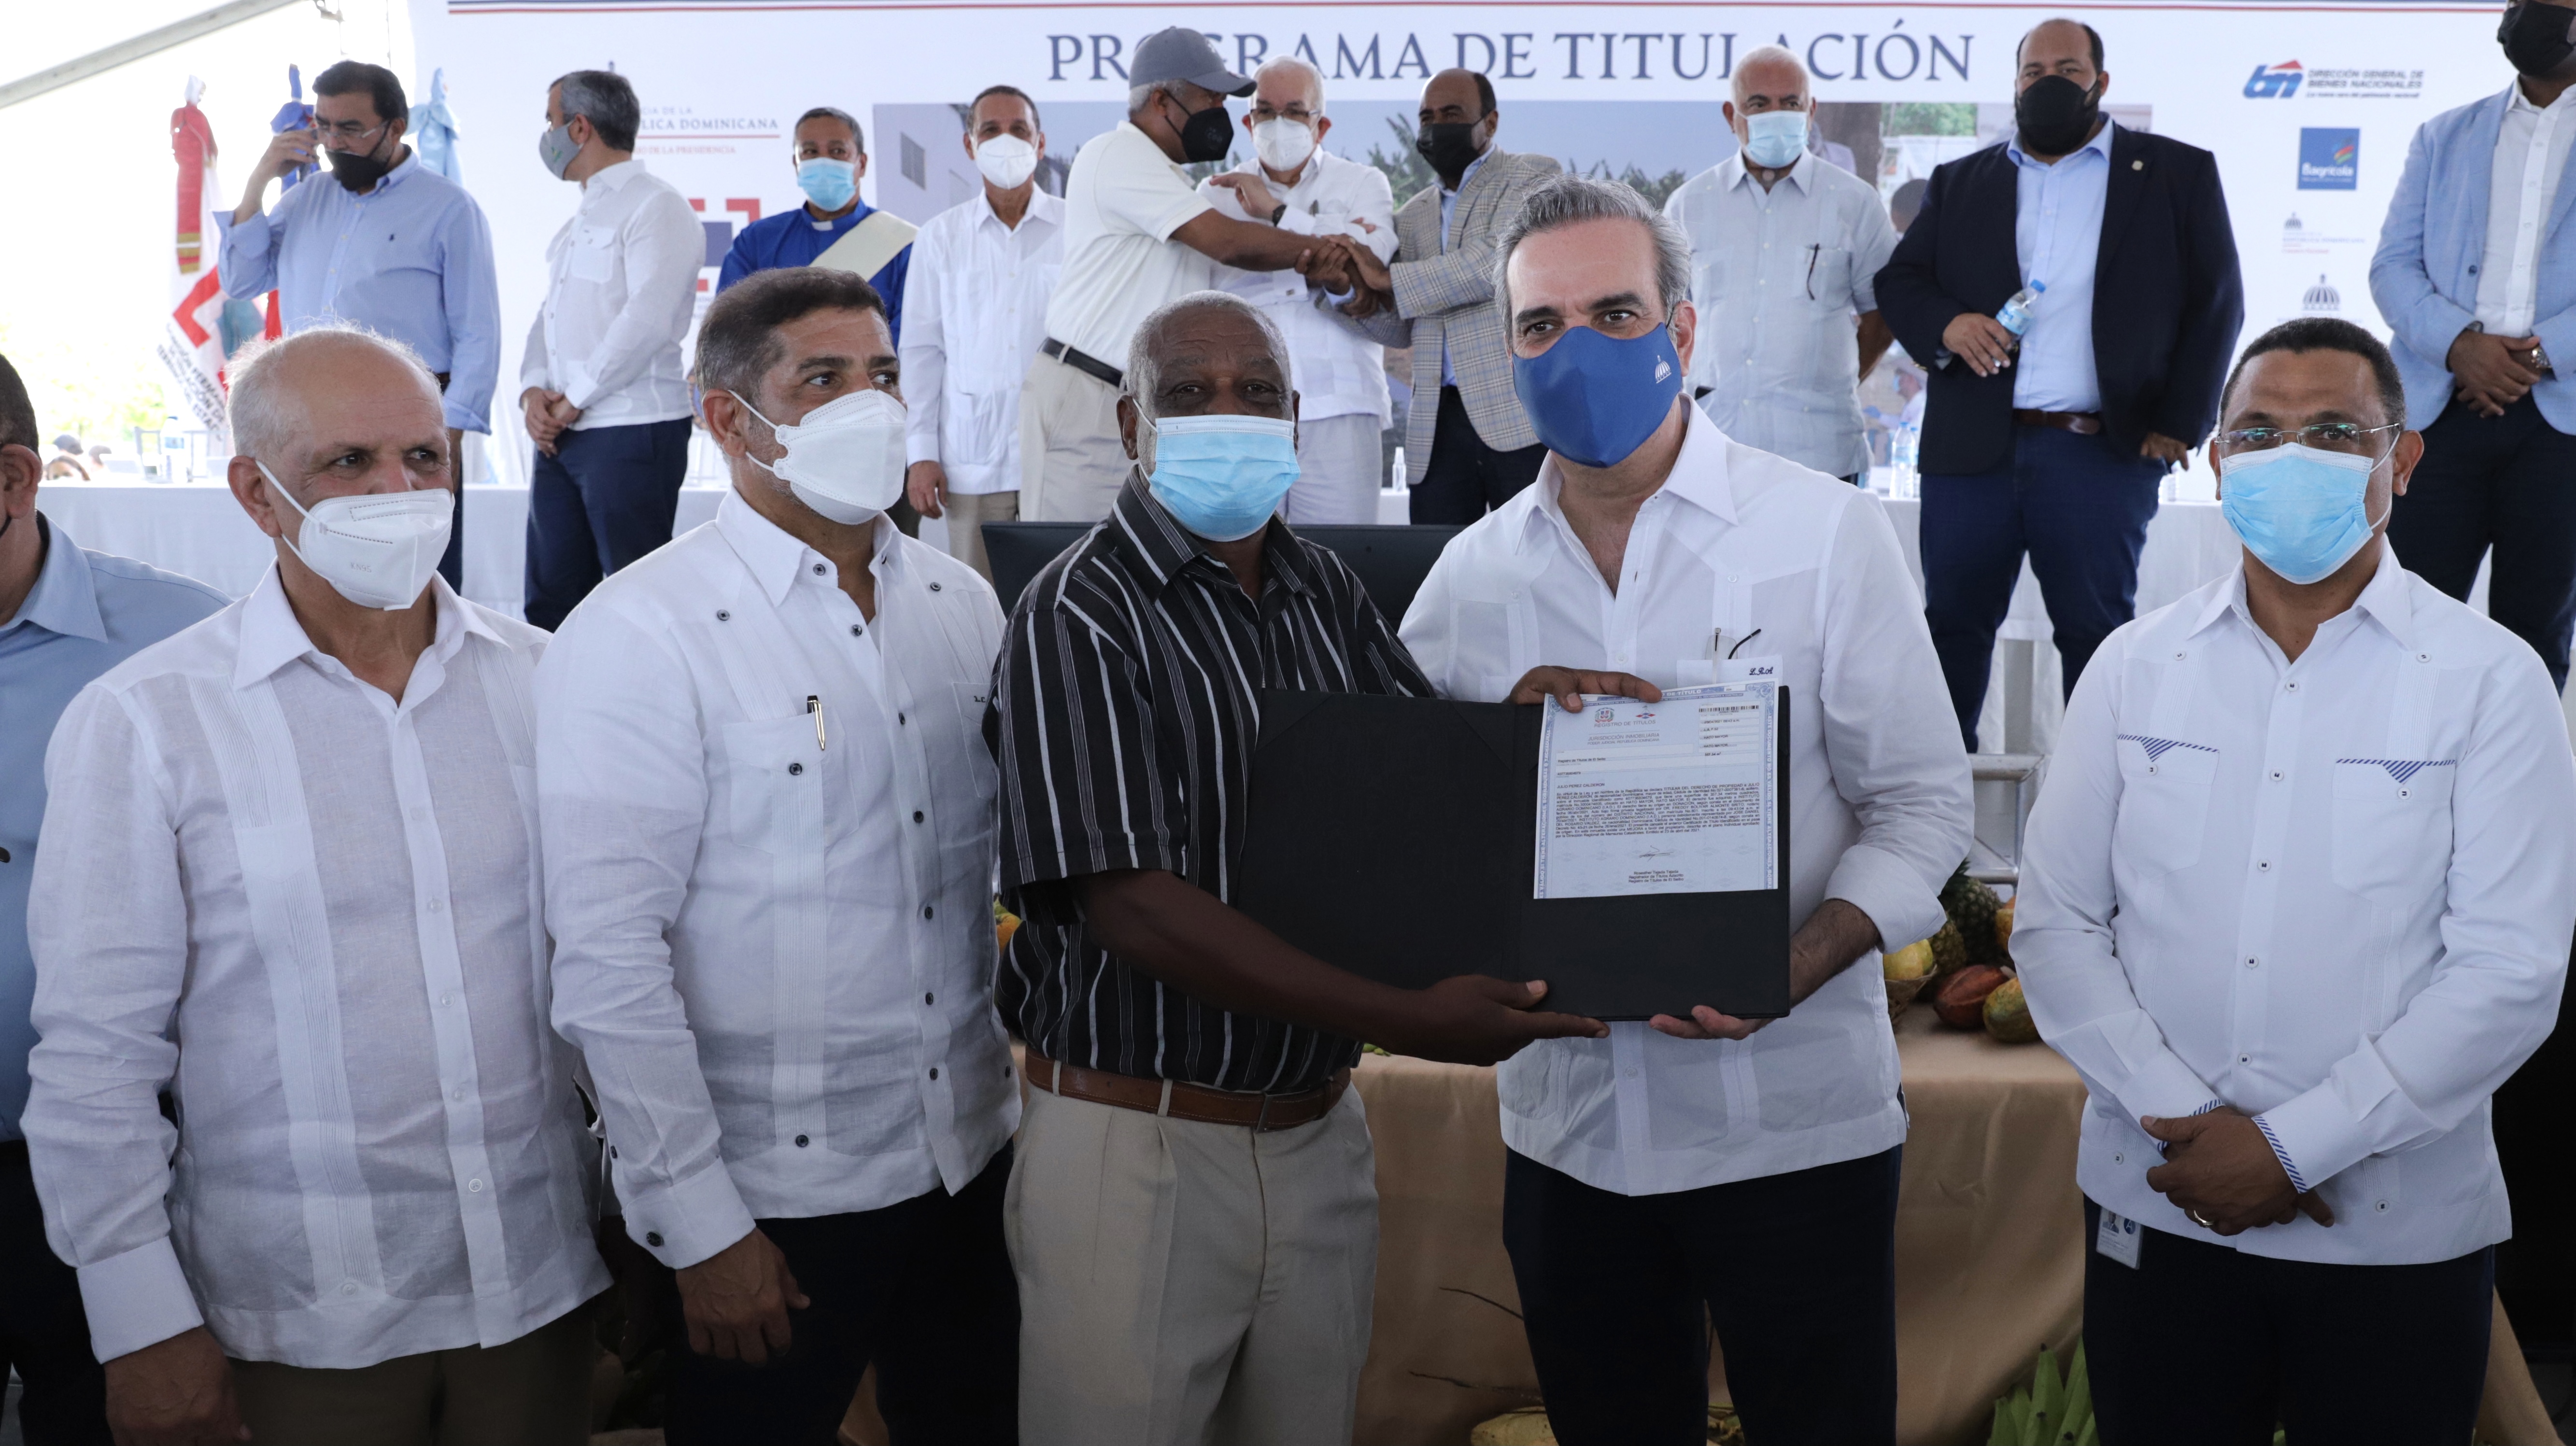 REPÚBLICA DOMINICANA: Presidente Abinader: Entrega de títulos es la mayor expresión de justicia social